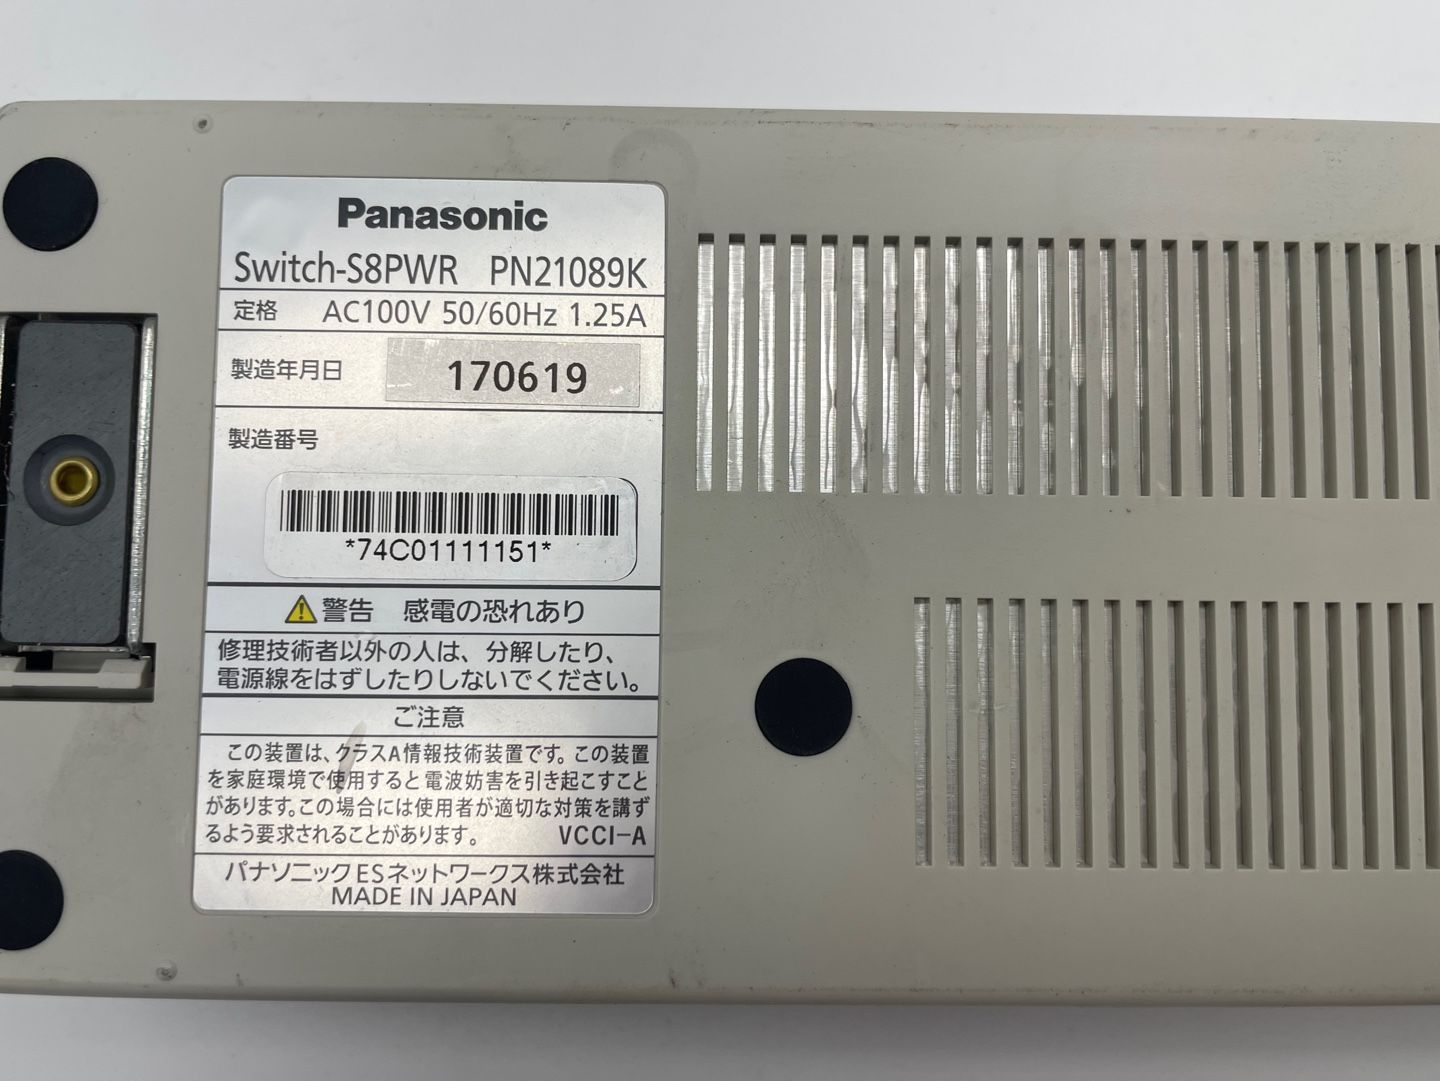 保証あり/無料配送] Panasonic Switch-S8PWR PN21089K スイッチング